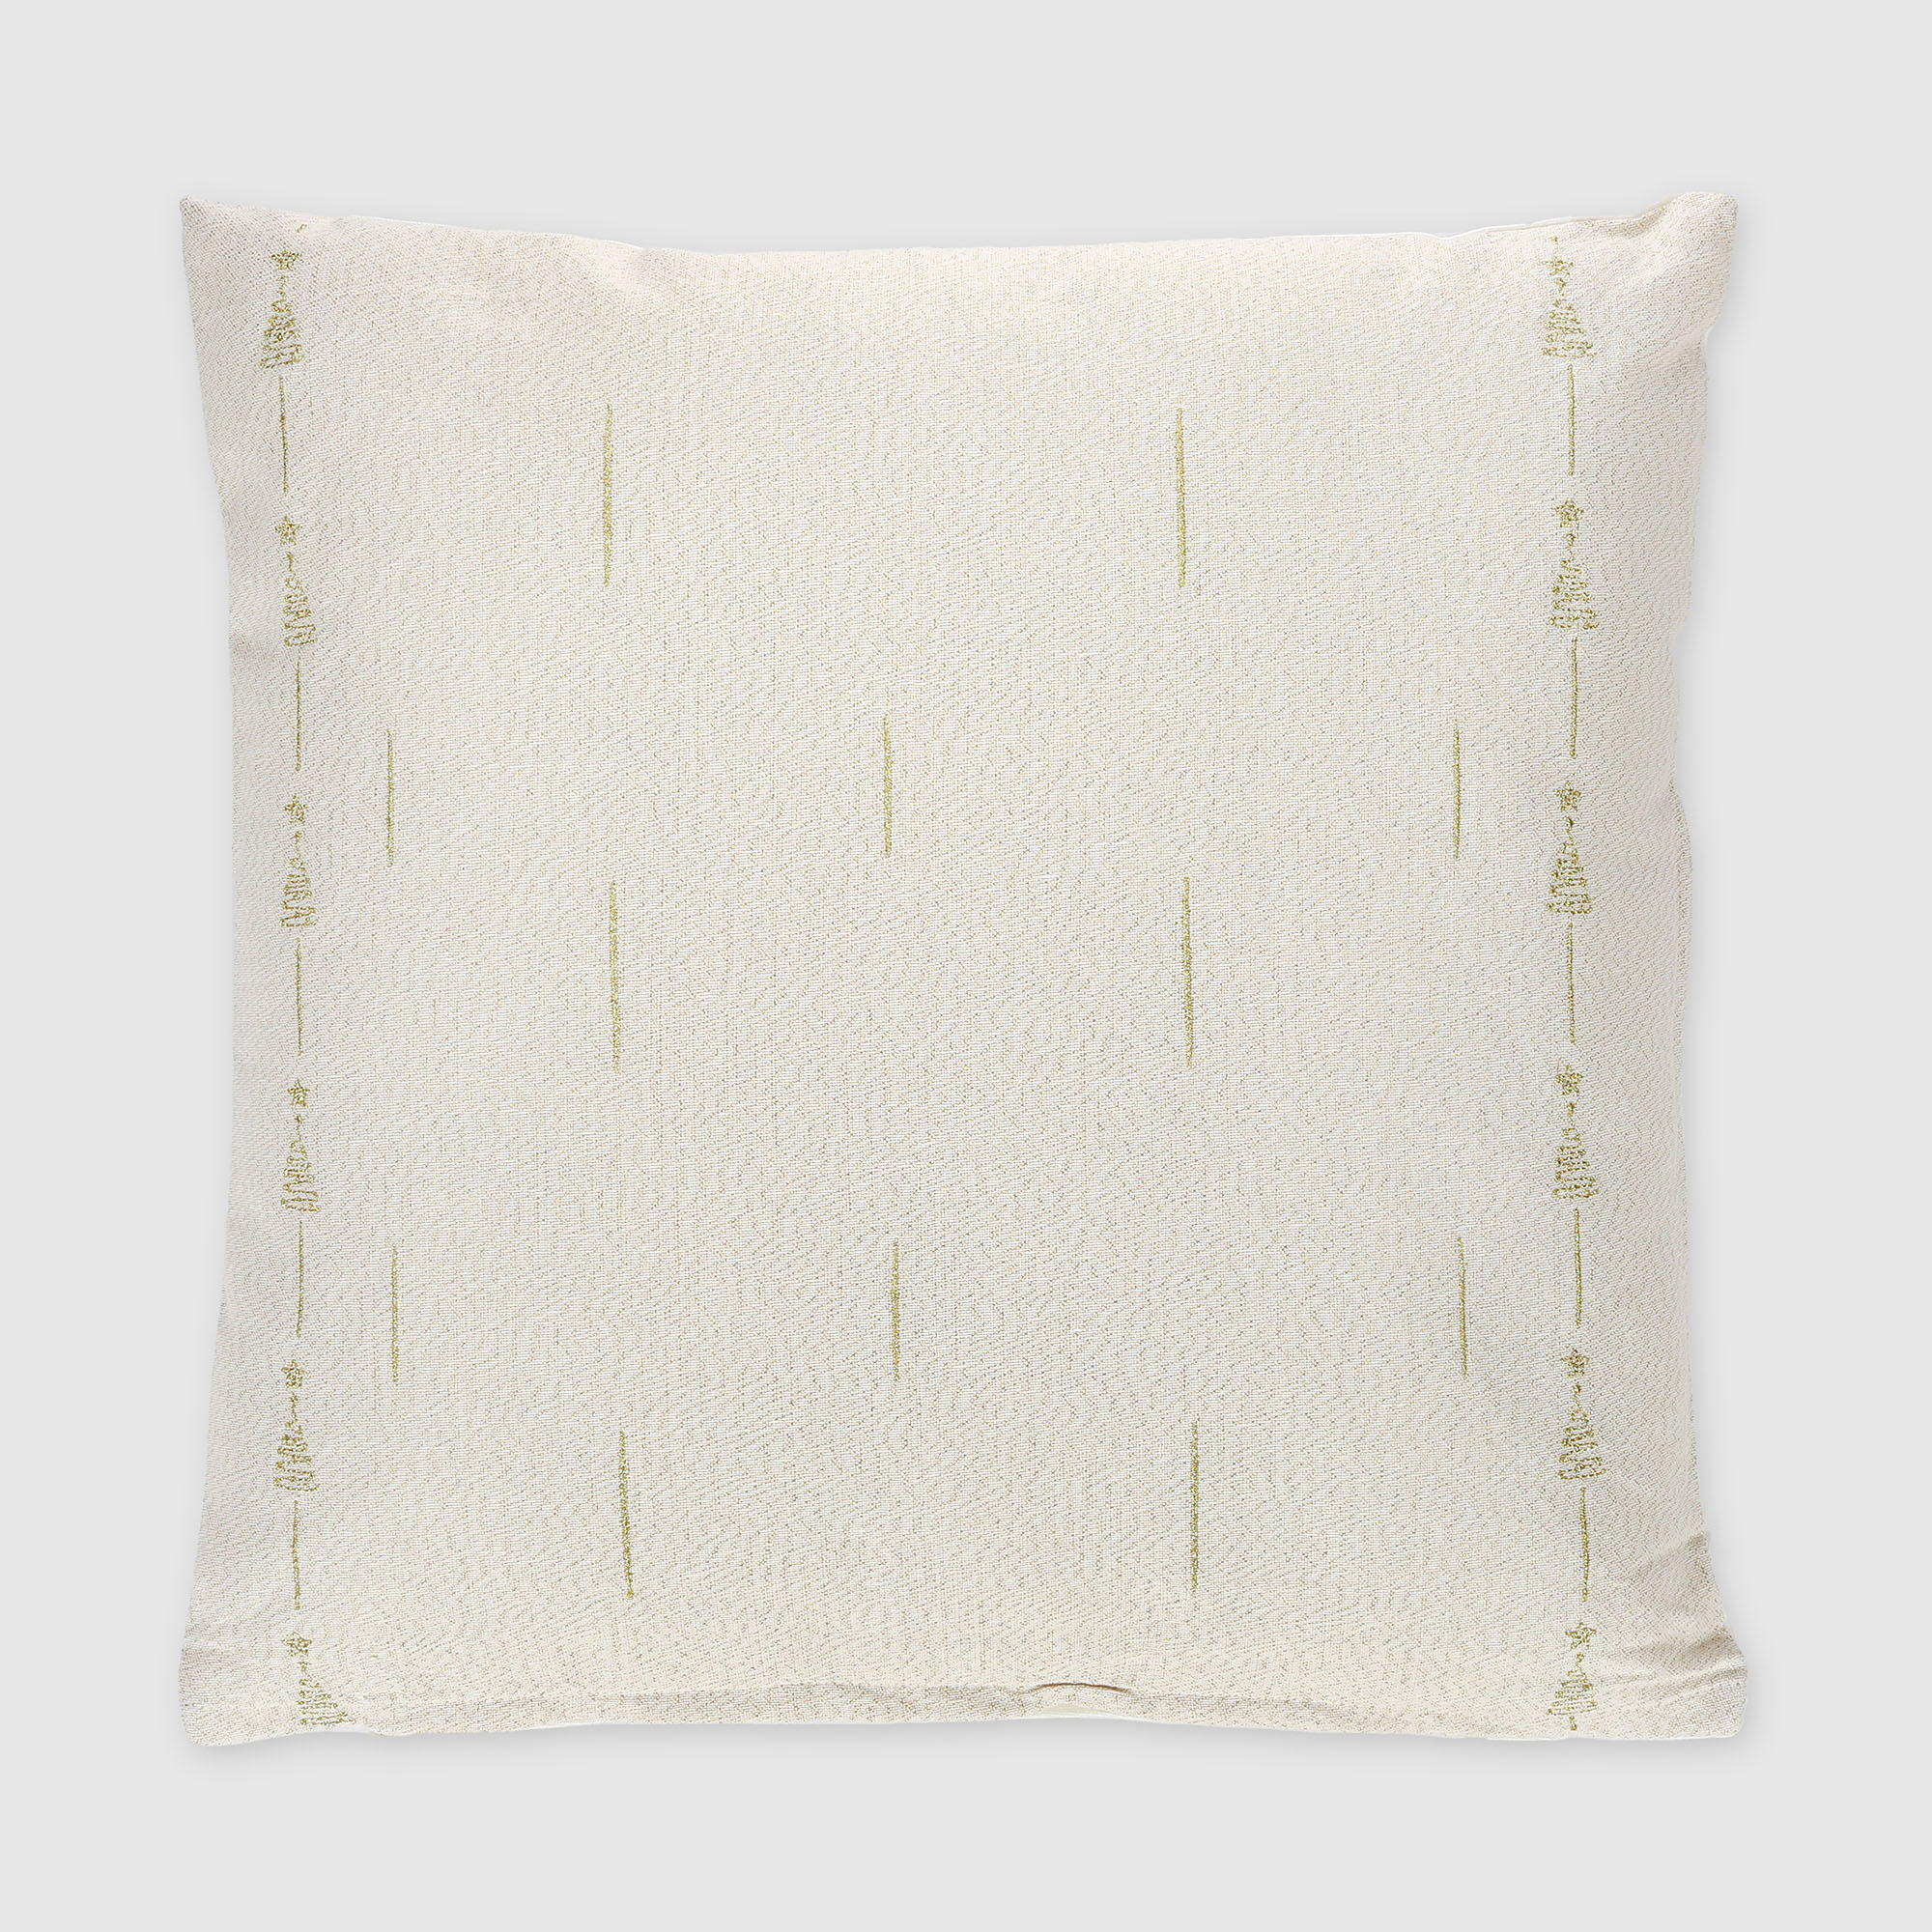 Подушка-сидушка Ad trend textile xmas 45x45 см, цвет бежевый